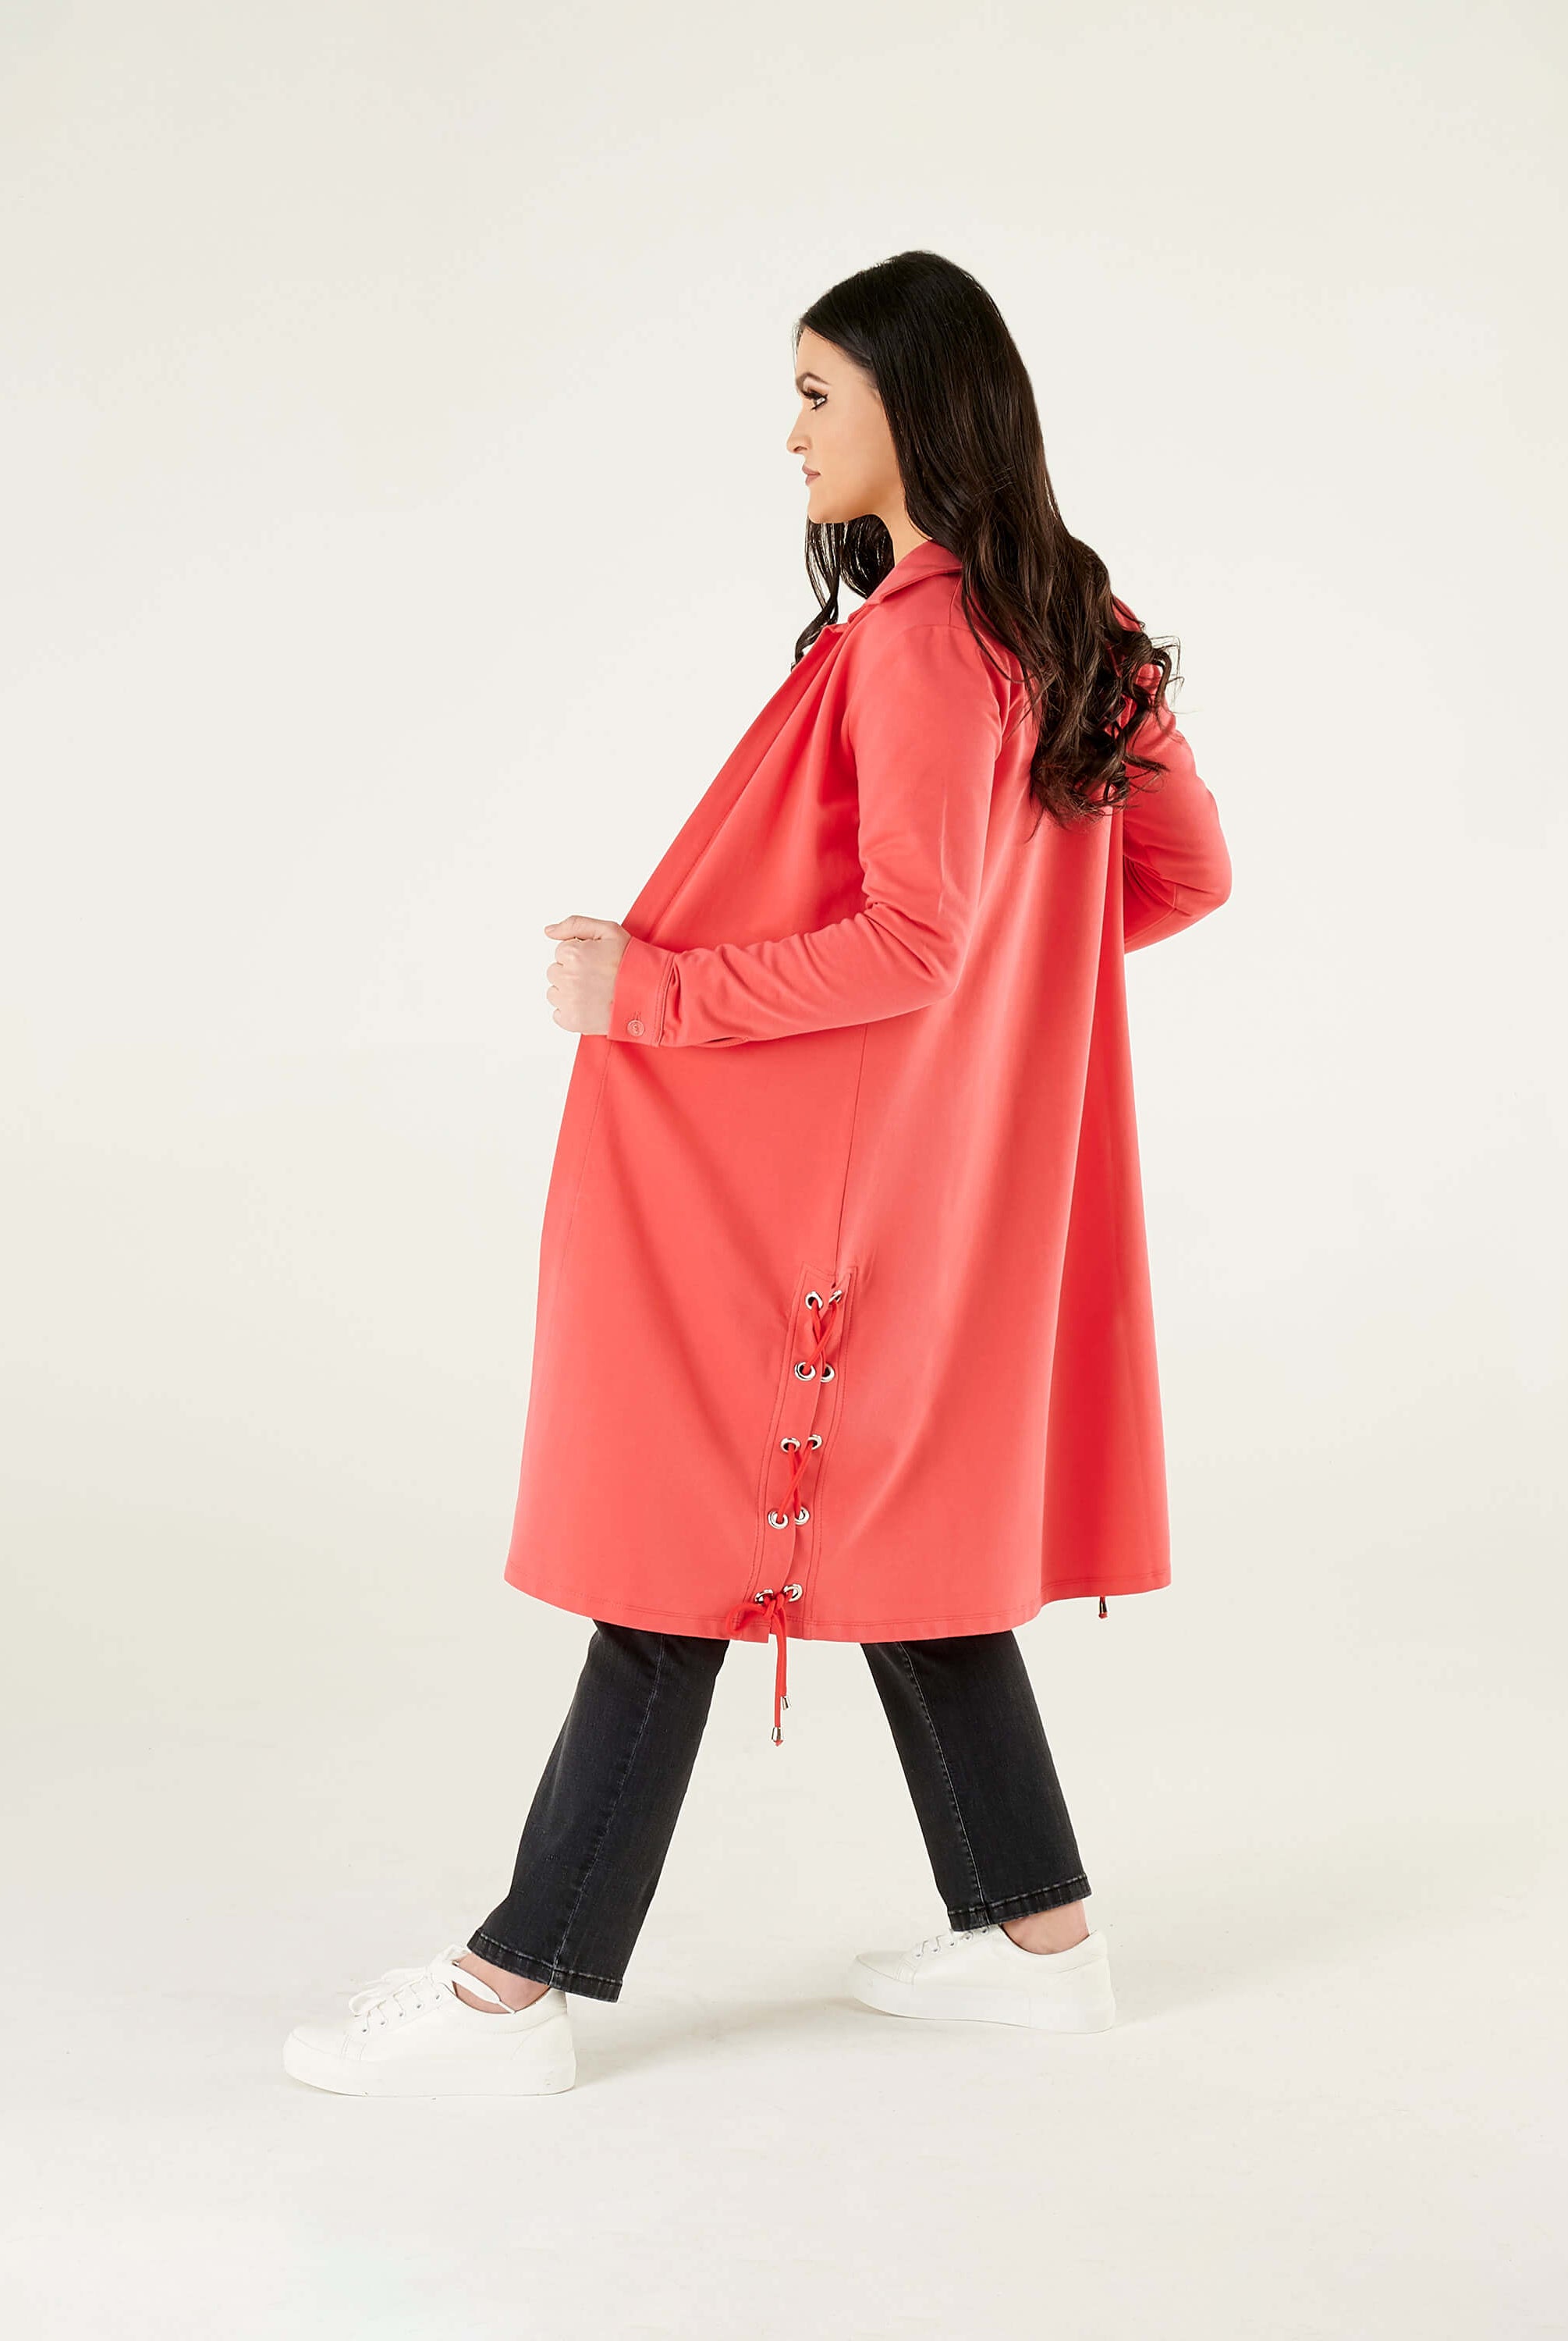 women's pink coat